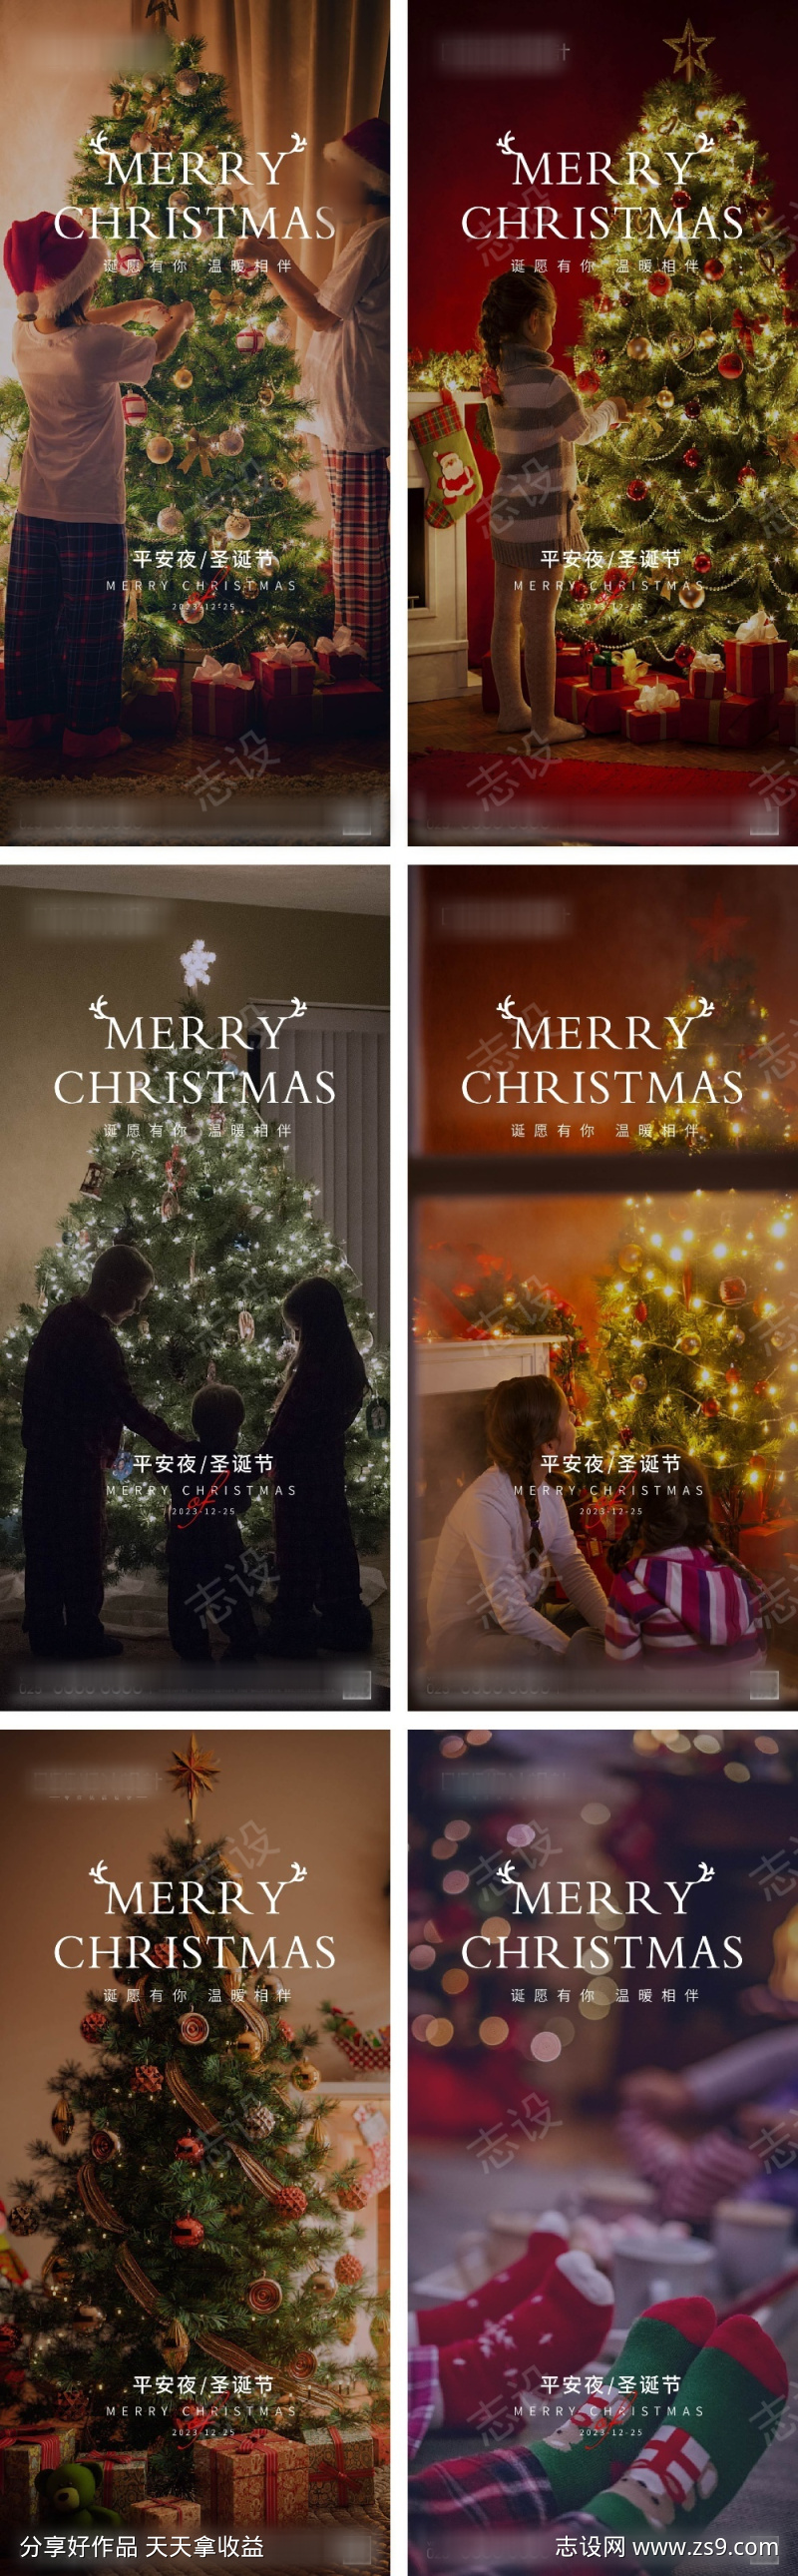 平安夜圣诞节系列海报